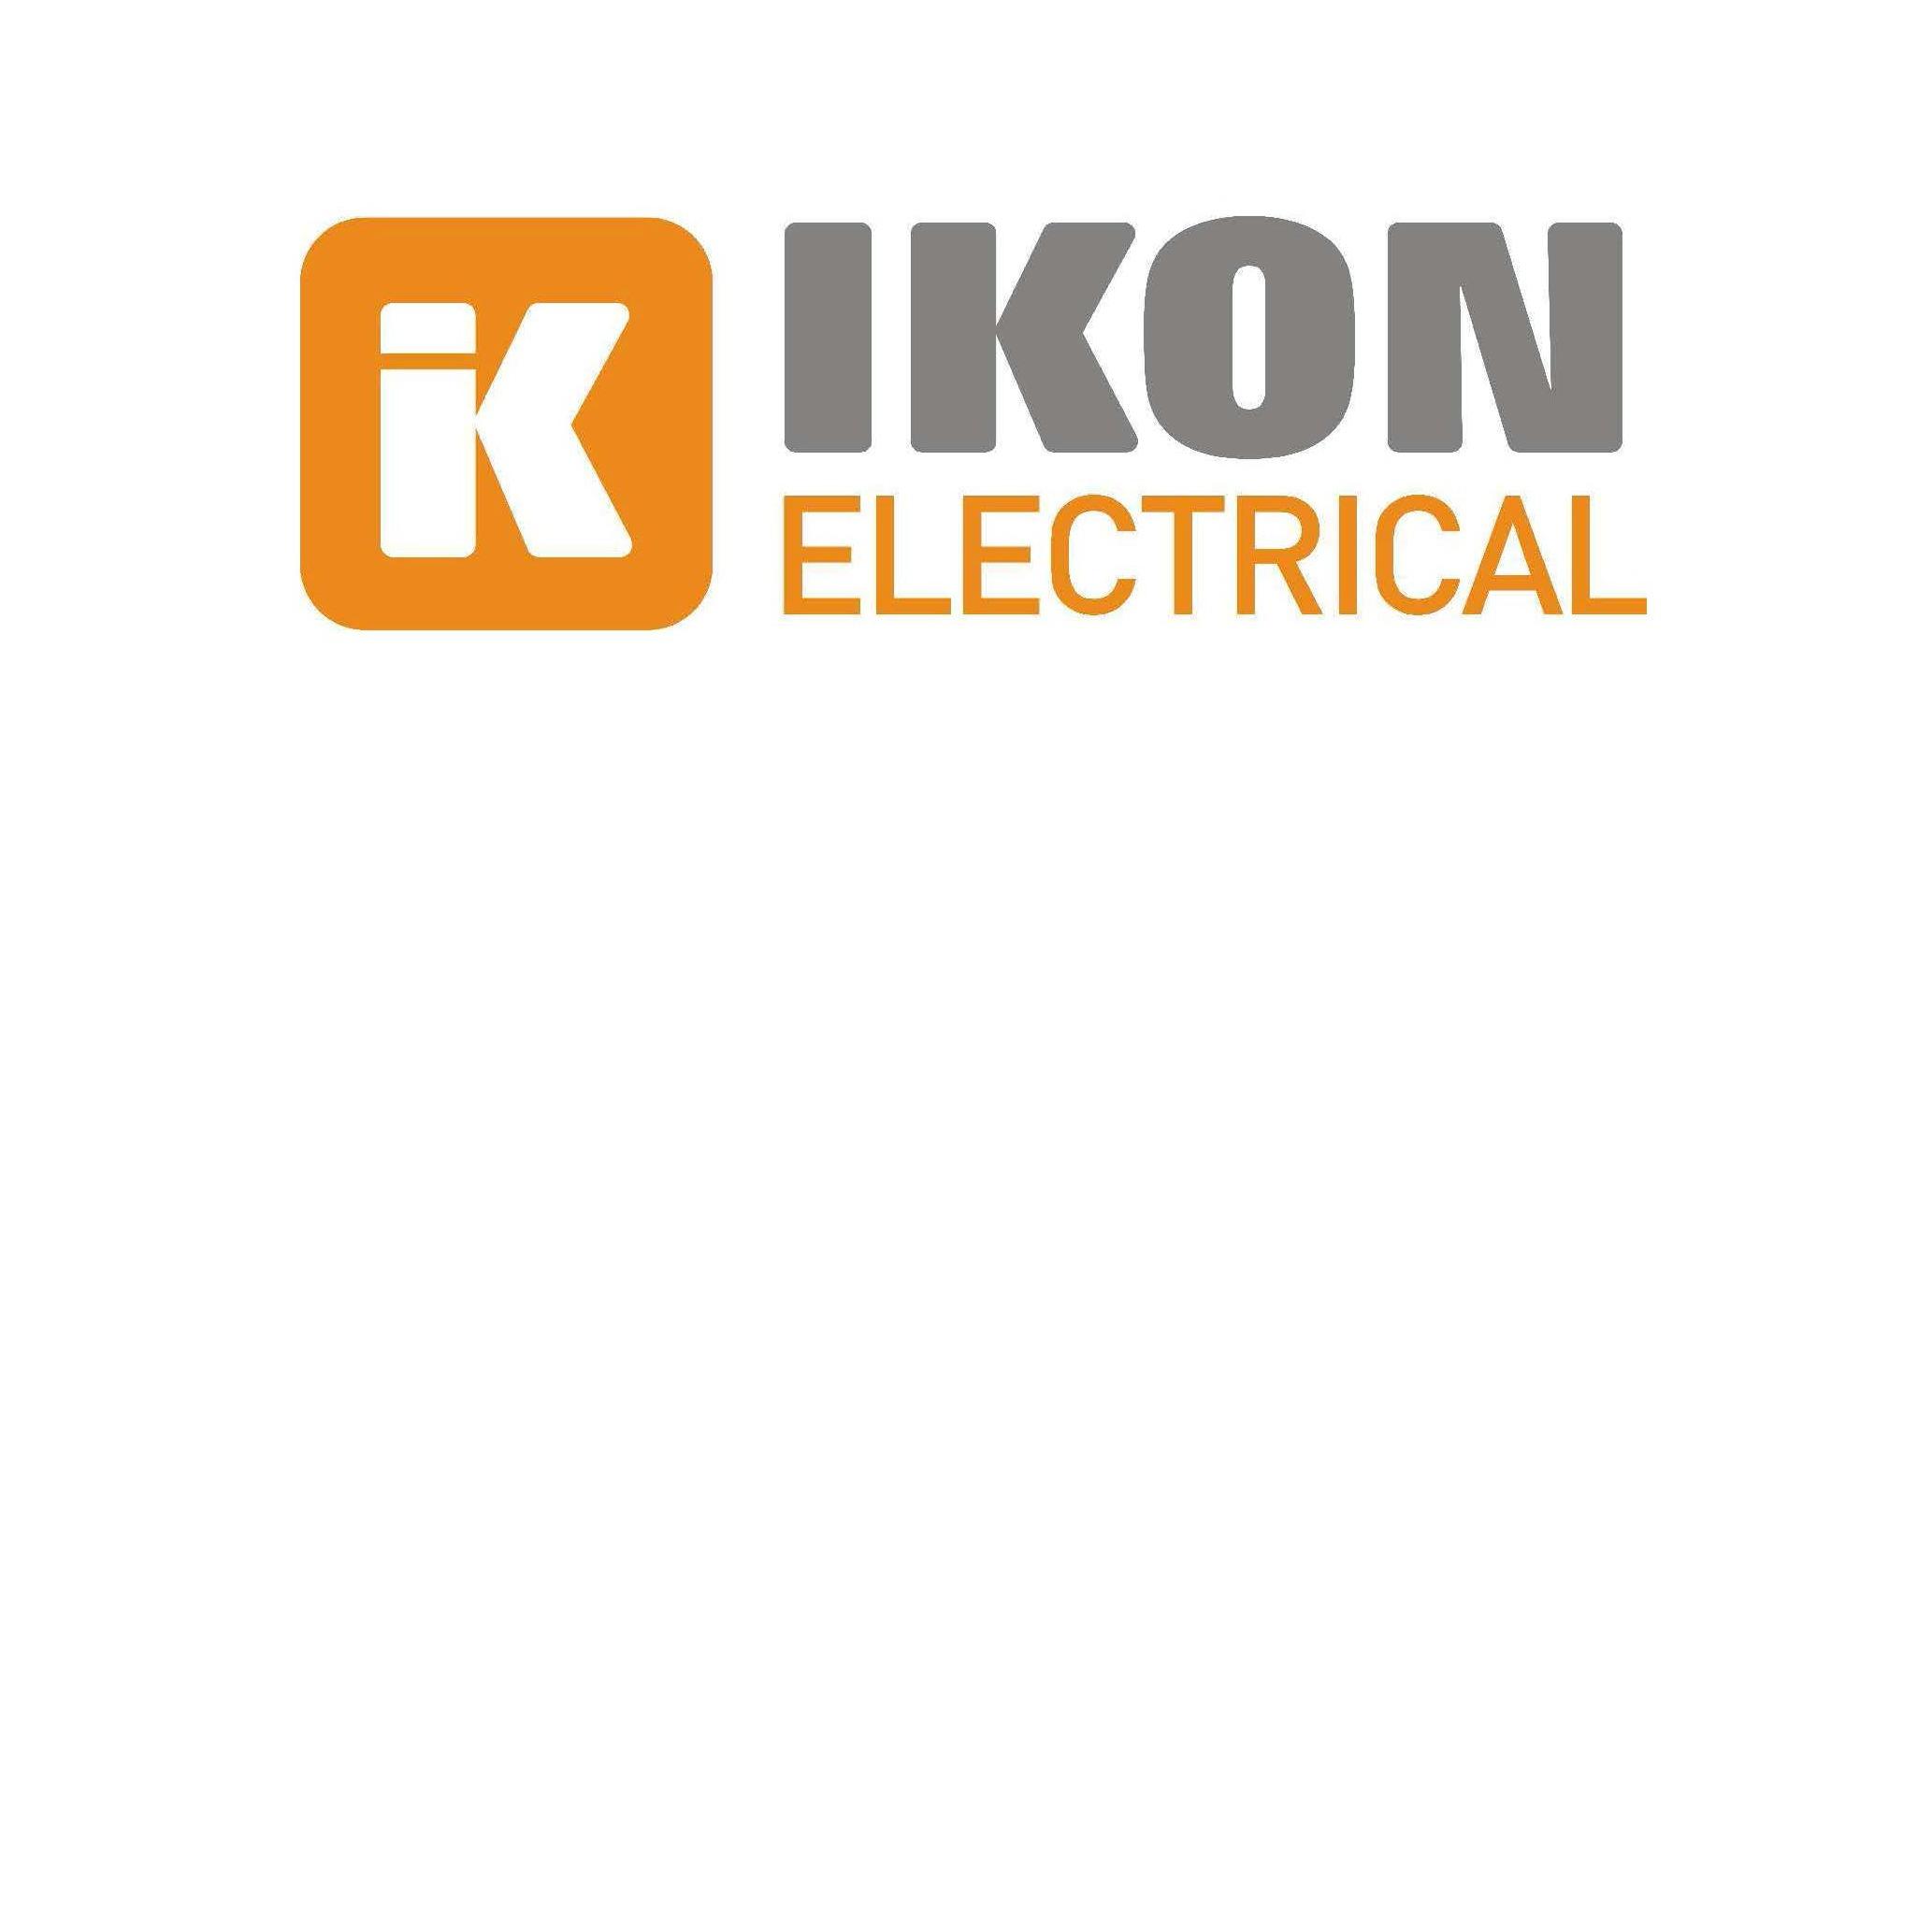 Ikon Electrical Irwin